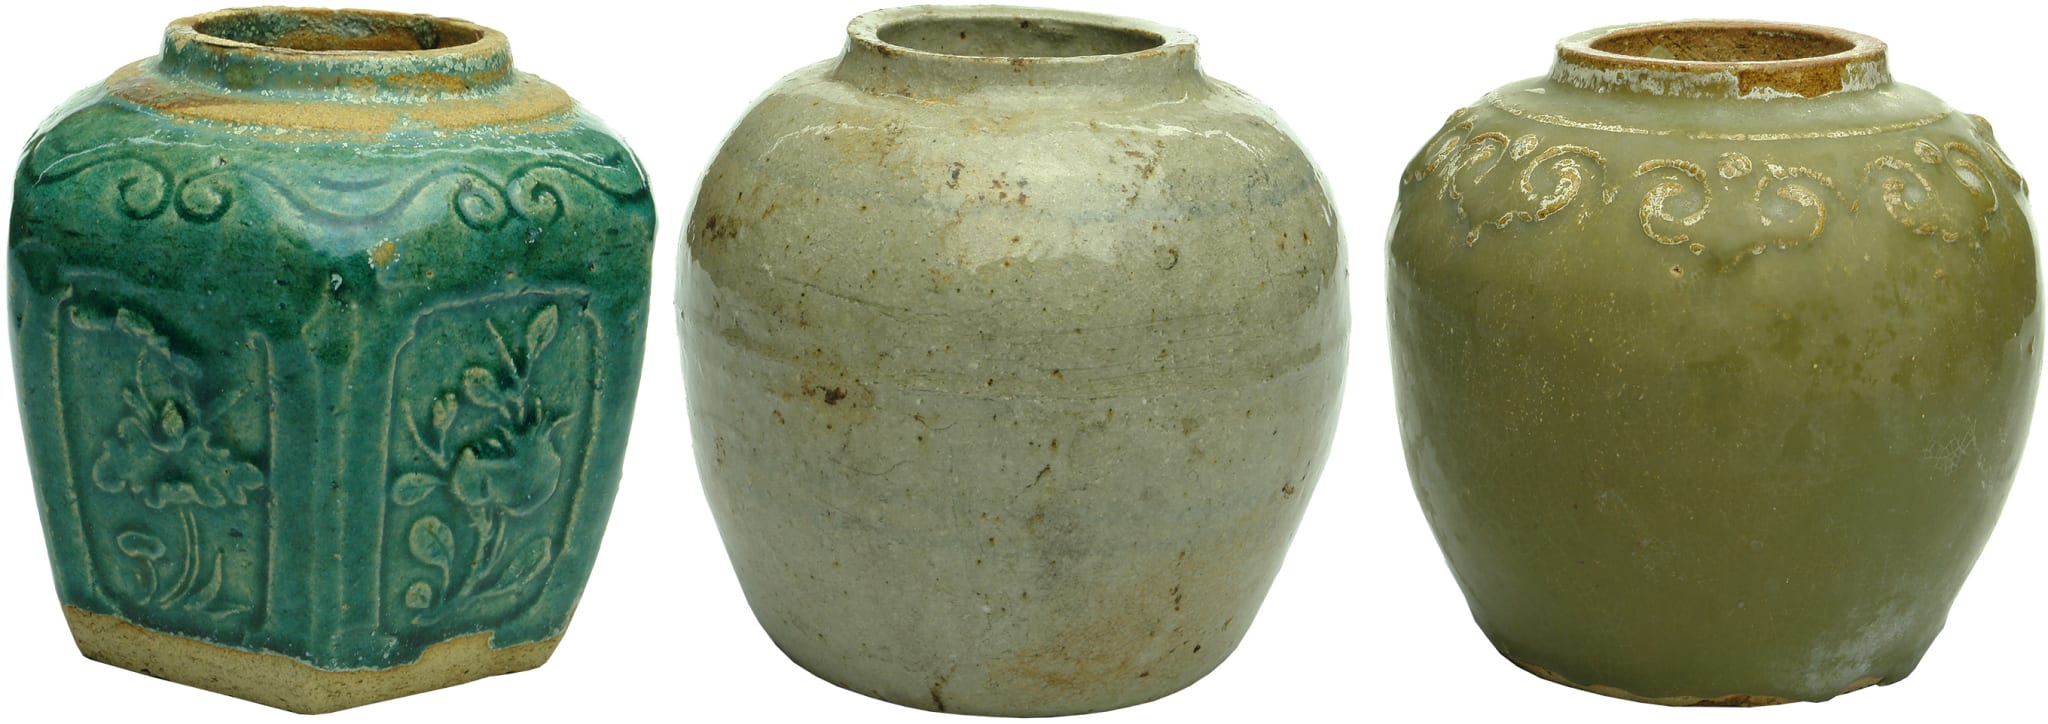 Antique Chinese Ginger Jars Ceramic